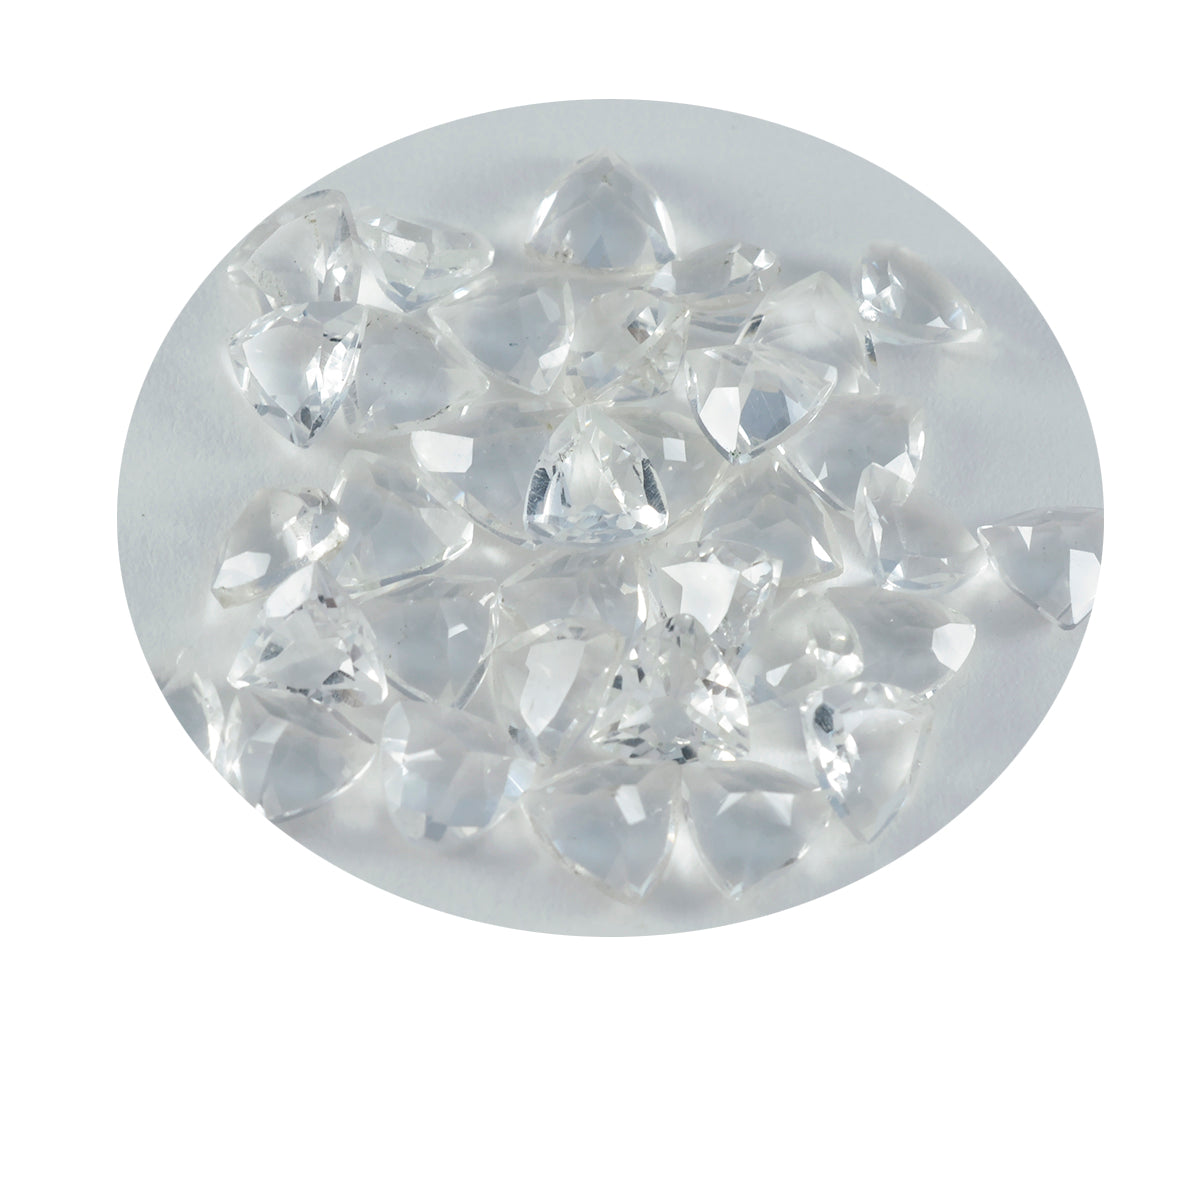 Riyogems 1 pièce de quartz en cristal blanc à facettes 7x7mm en forme de trillion, pierre précieuse de superbe qualité